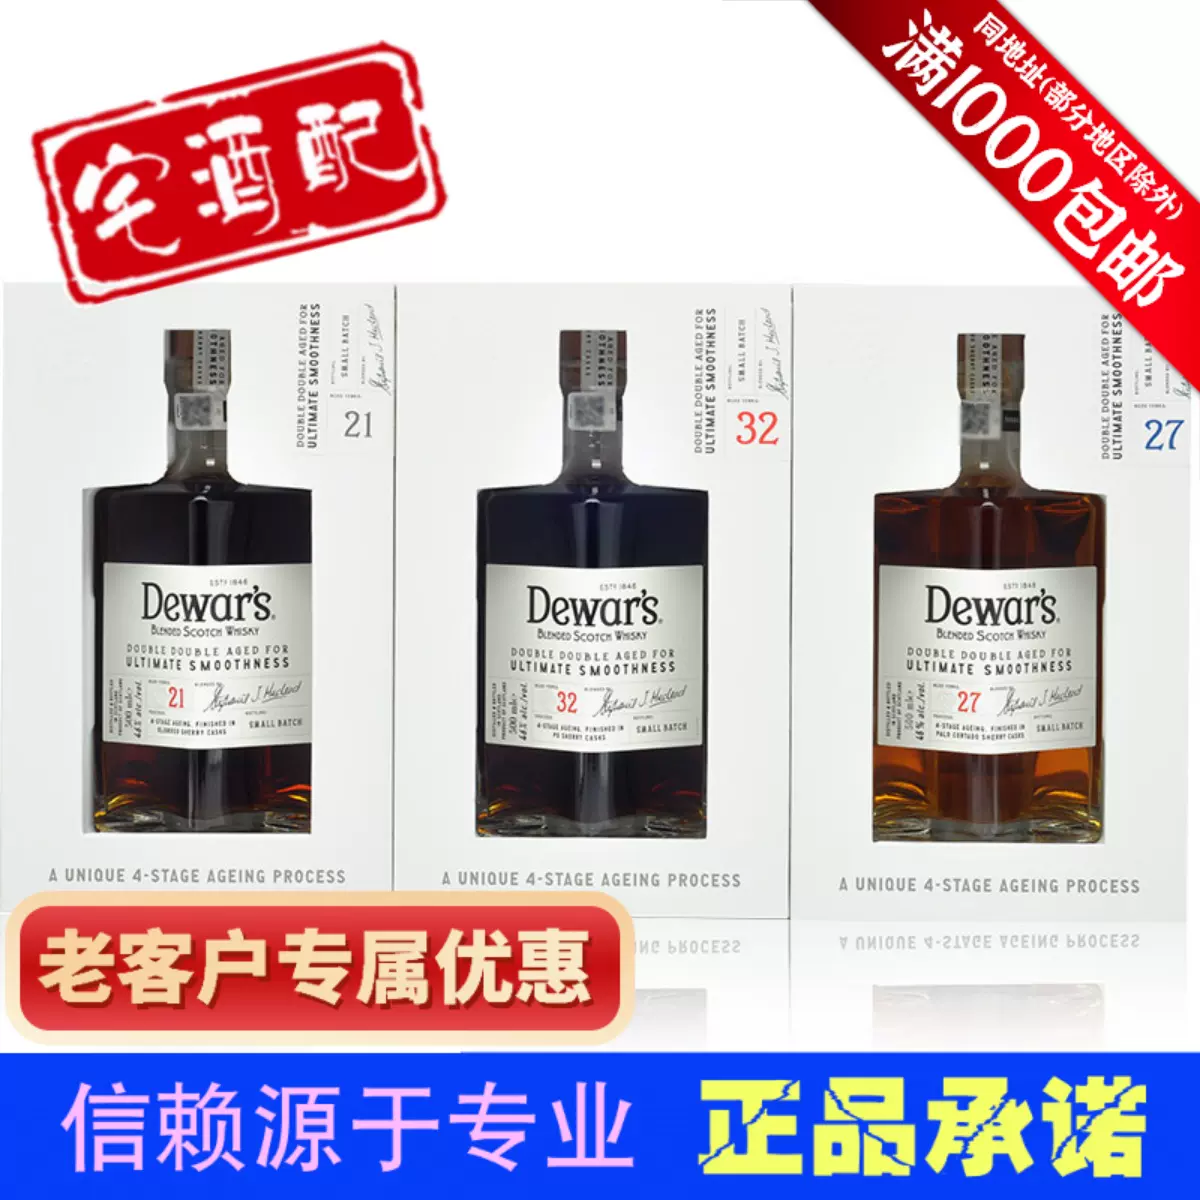 Dewar's doubledouble 27年食品/飲料/酒 - ウイスキー